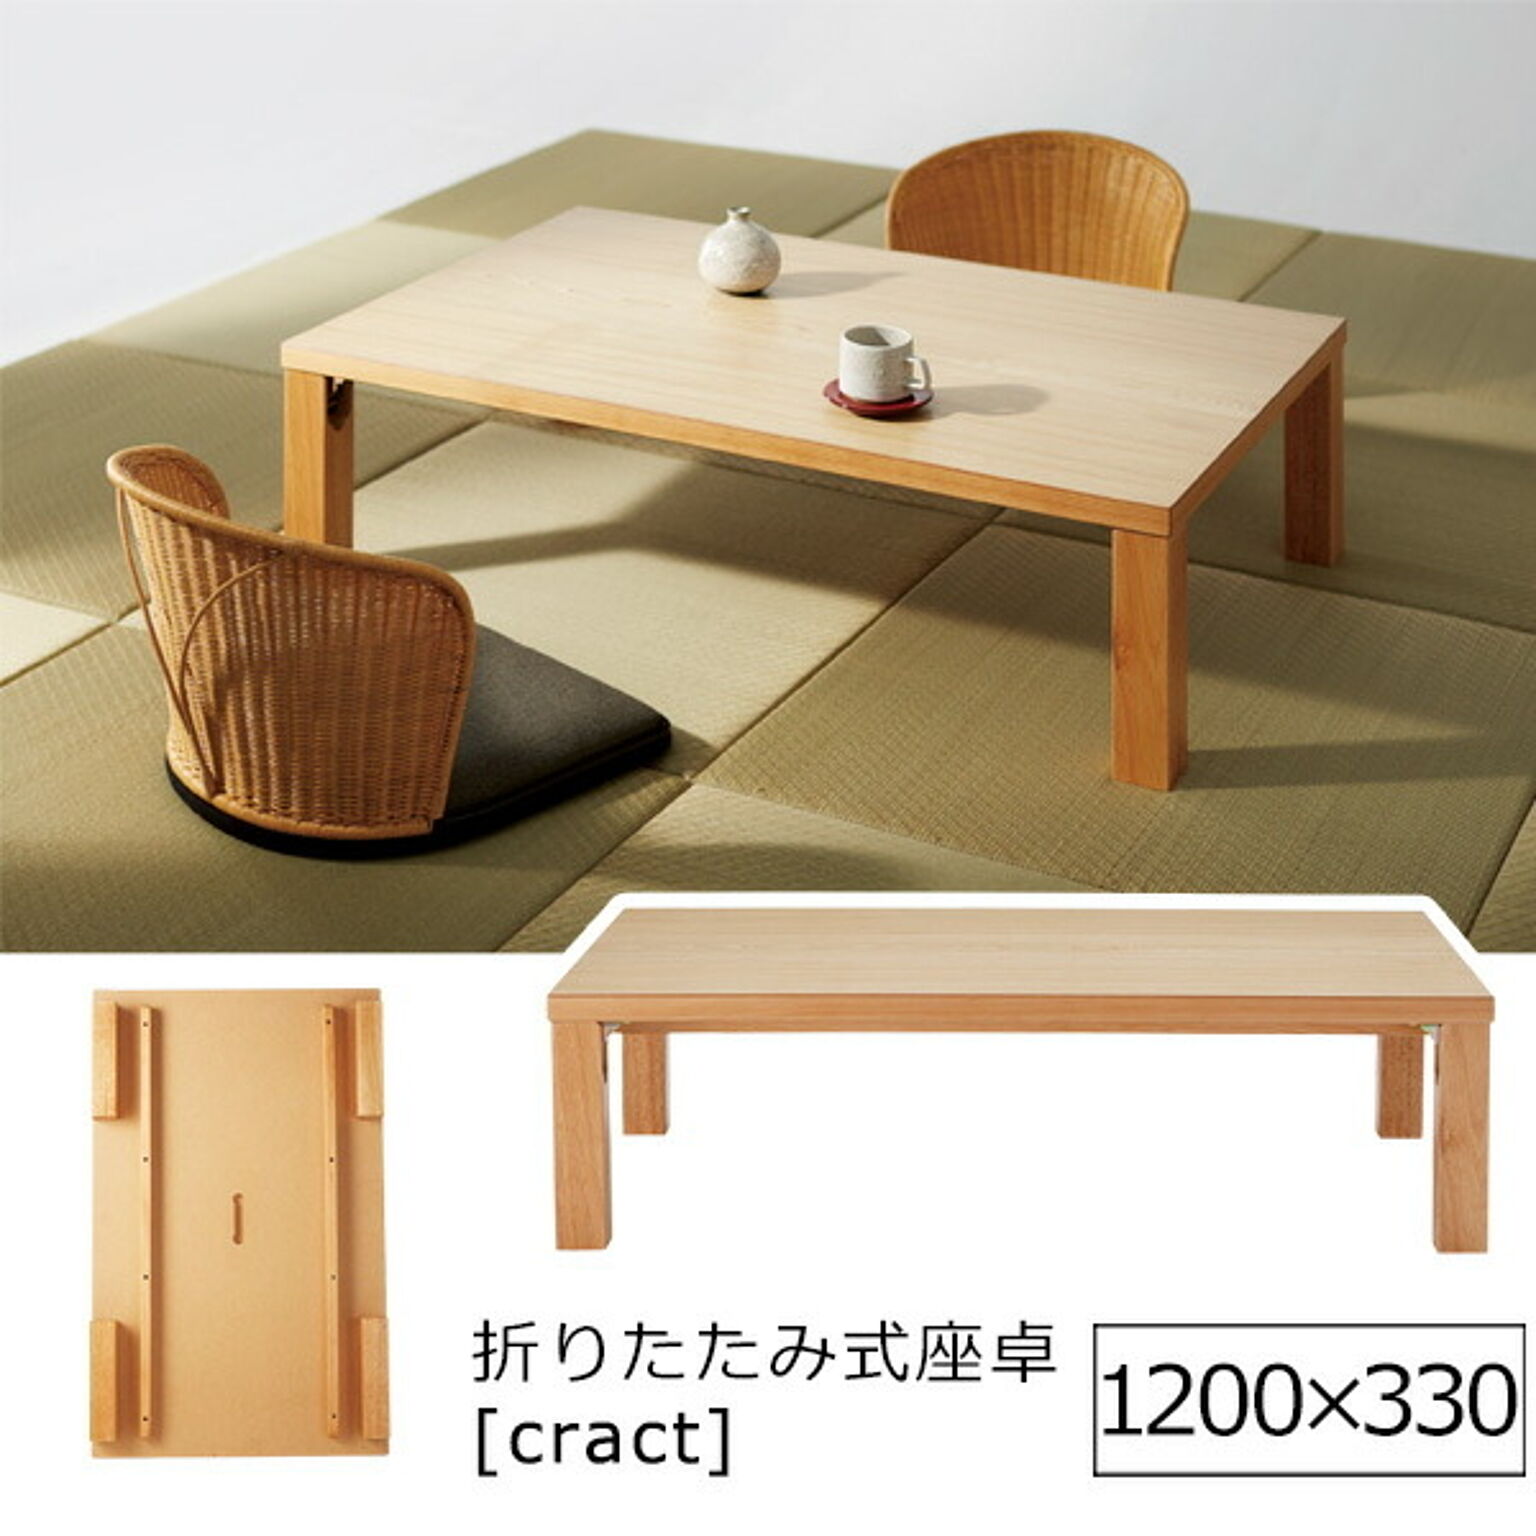 Cract ローテーブル 折りたたみ式 長方形 木製